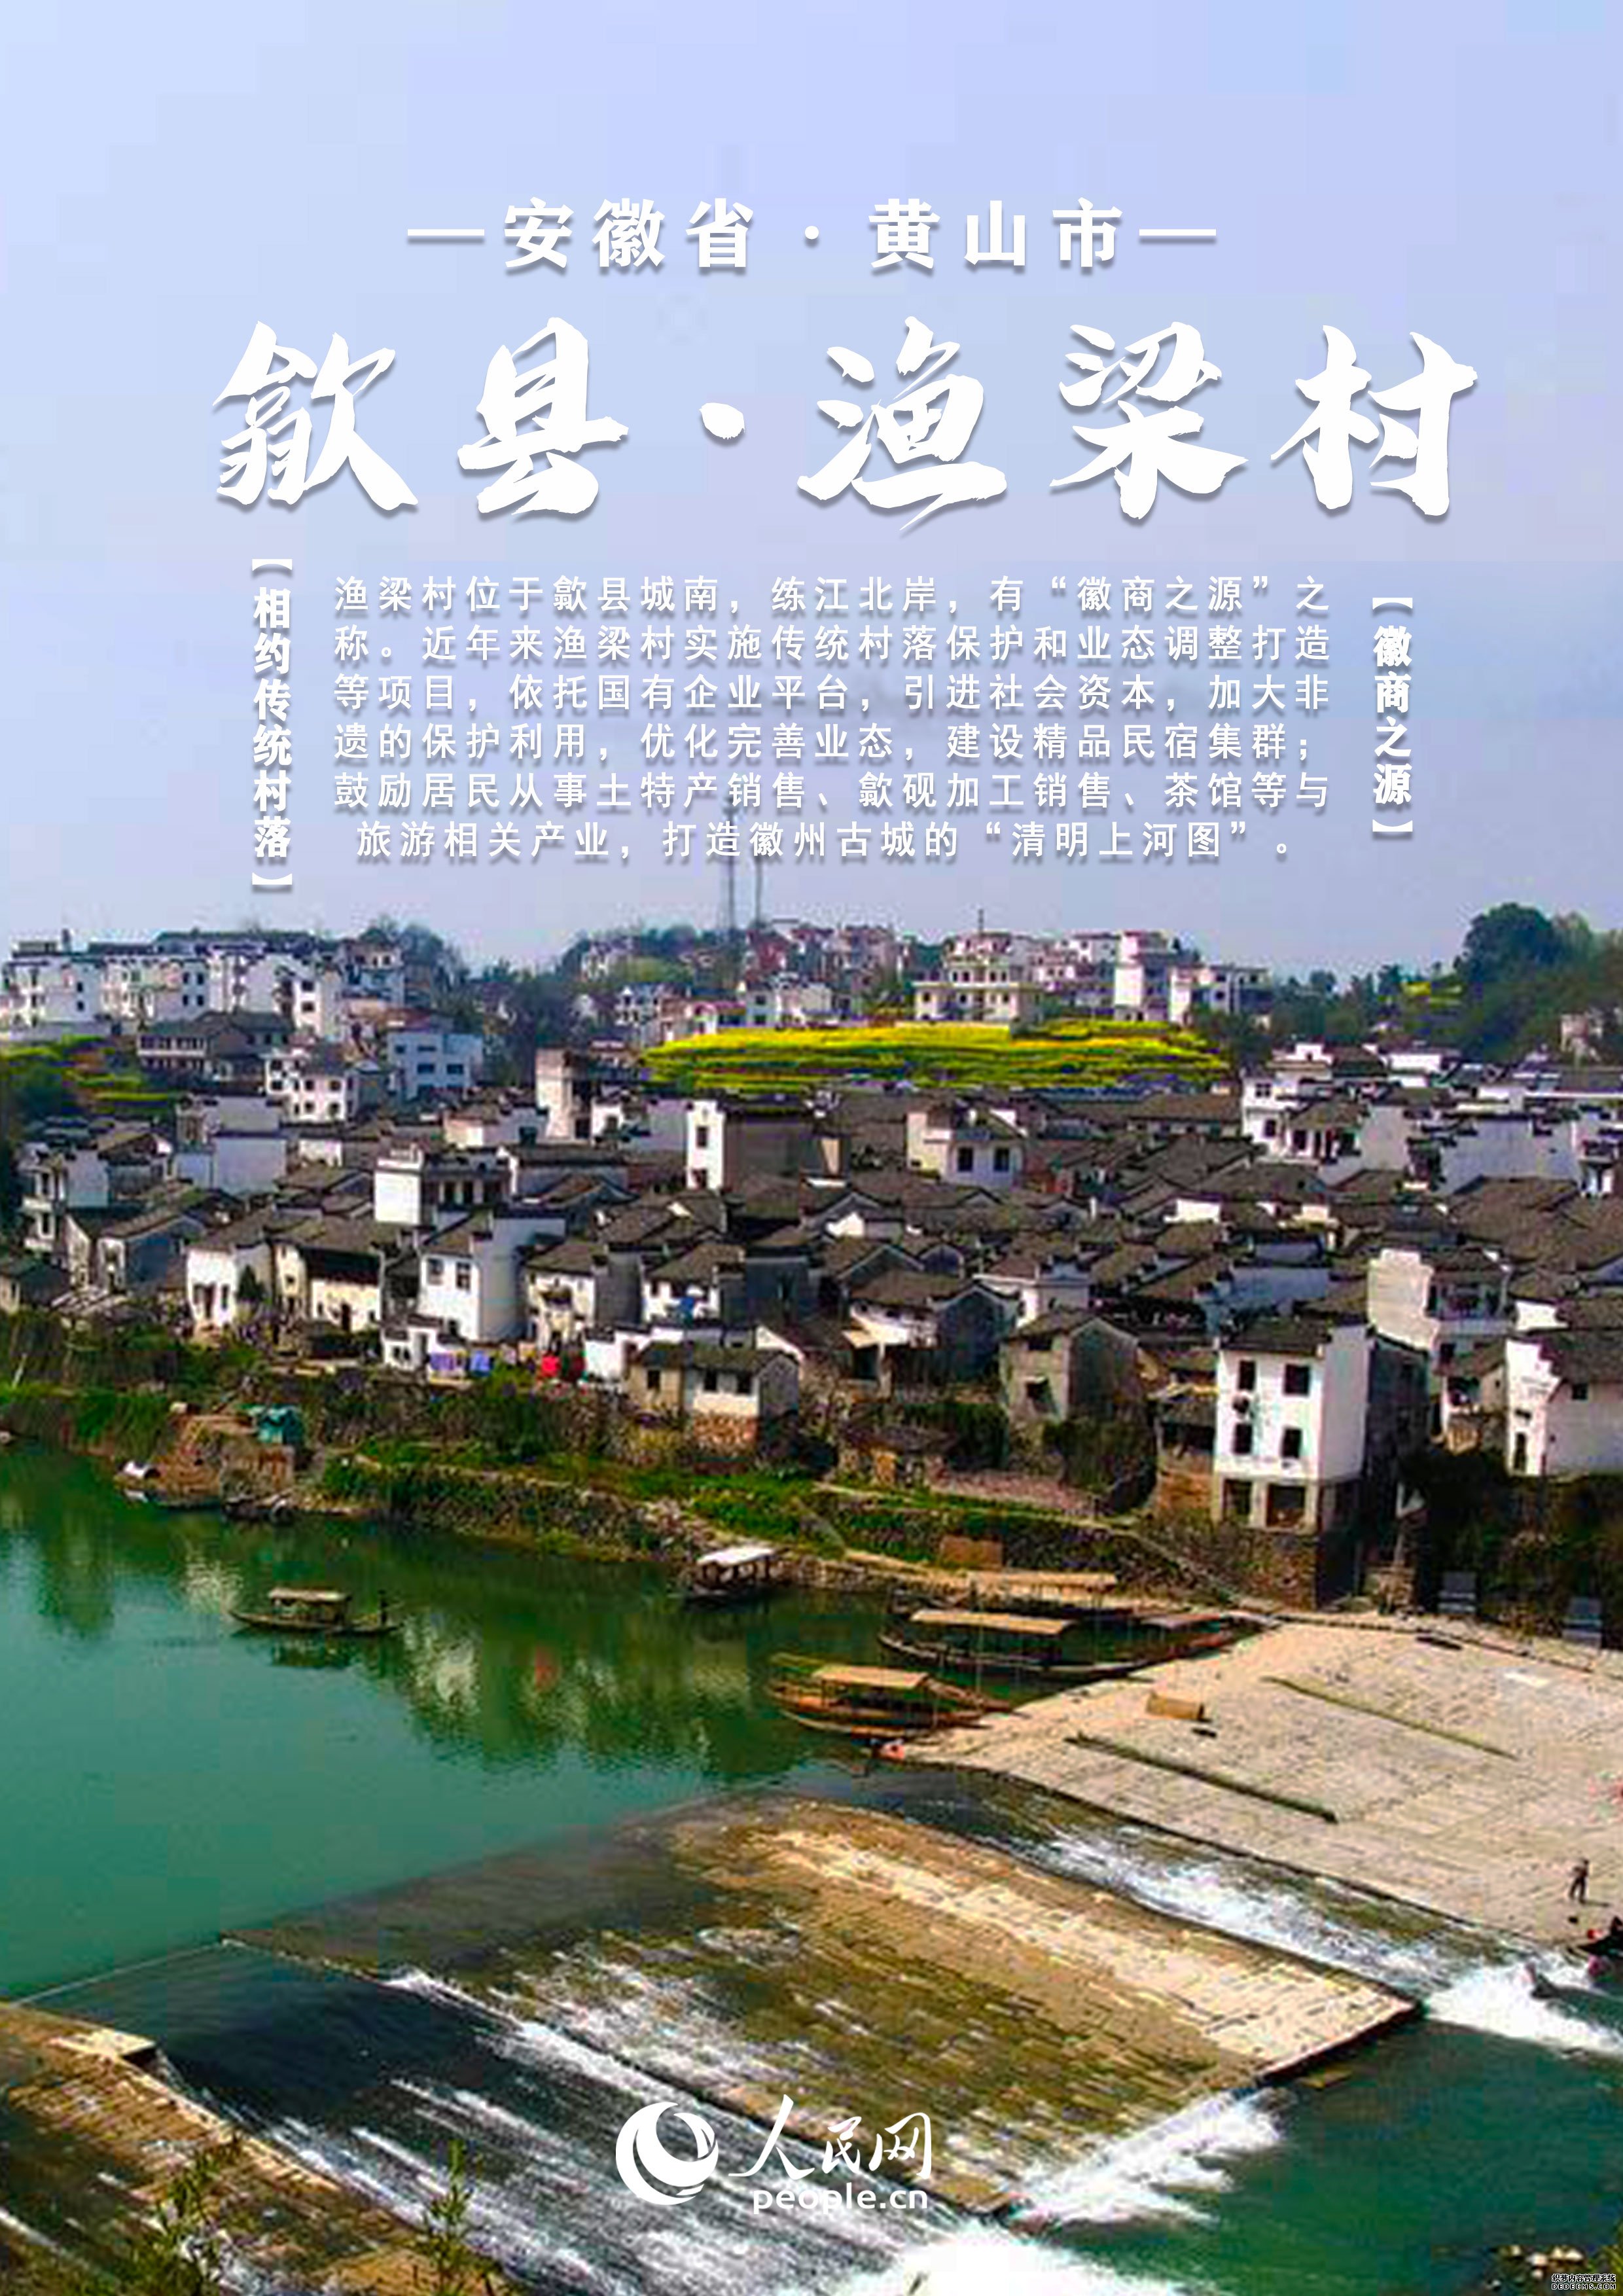 【发现最美你评我论】中国安徽传统村落大赏丨邀您共赏文旅画卷每张都值得收藏！